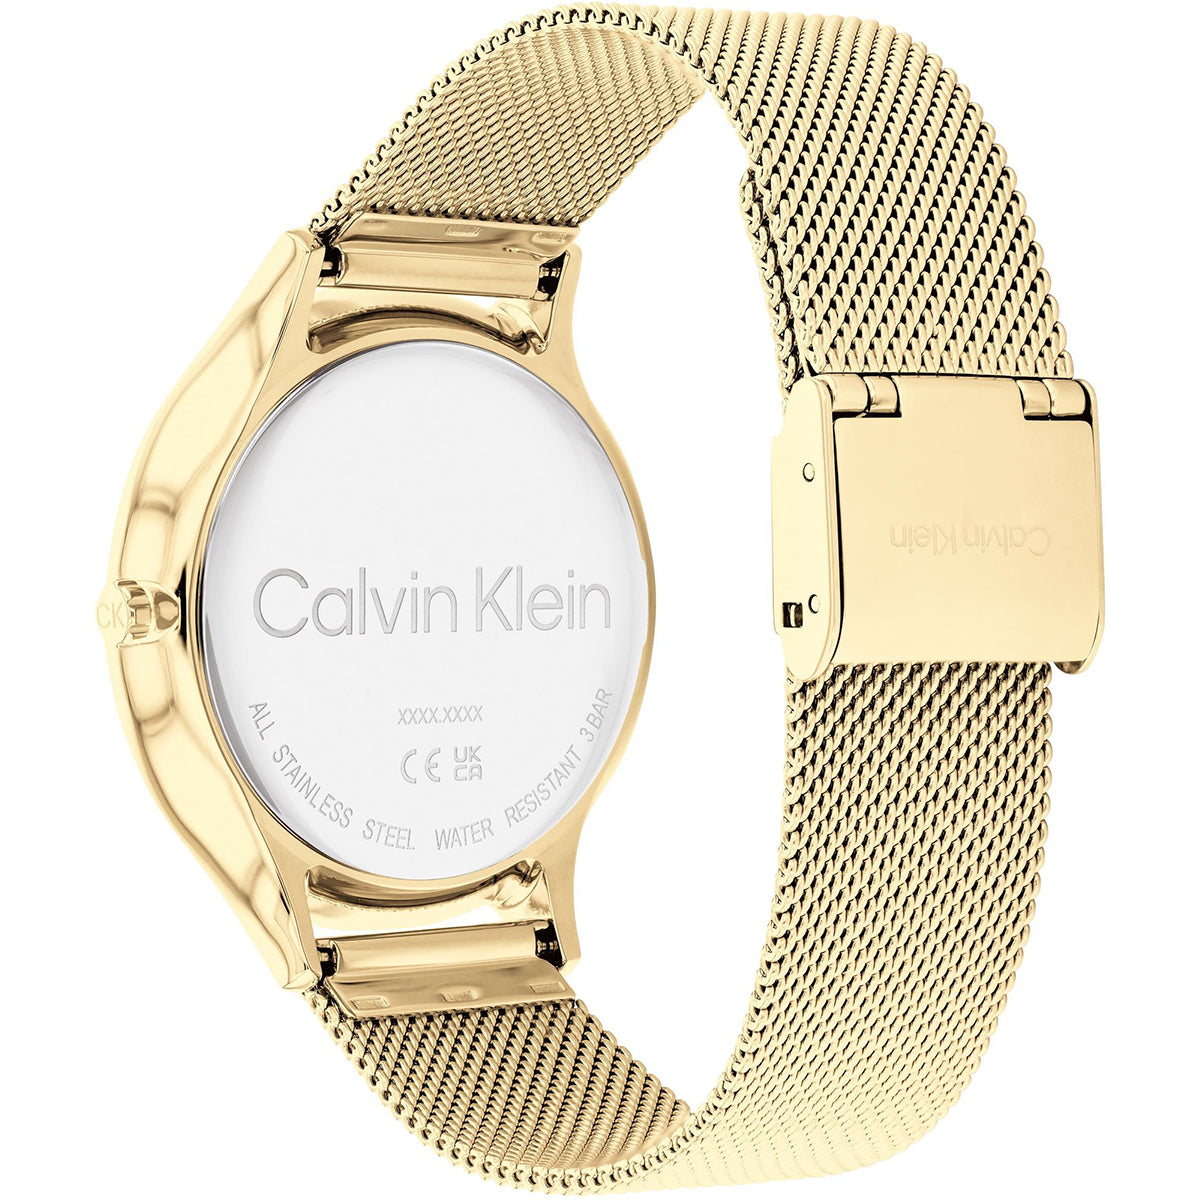 Calvin Klein - Timeless - 25200003